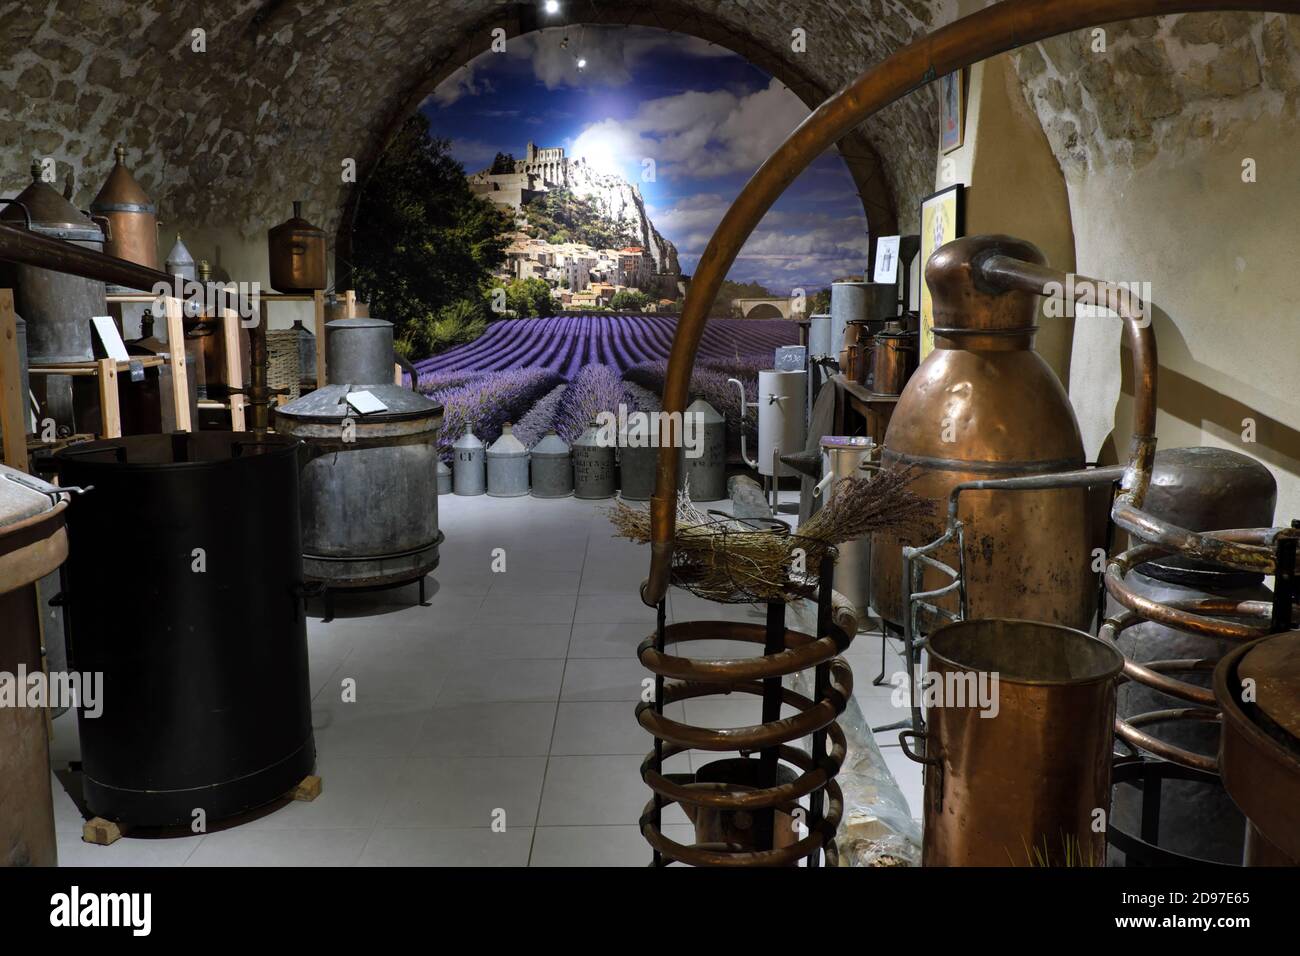 Mostra di stalle per la distillazione della lavanda, negozio Absolue Lavande, rue de la Sauneraie, Sisteron, Alpes de Haute Provence, Francia Foto Stock